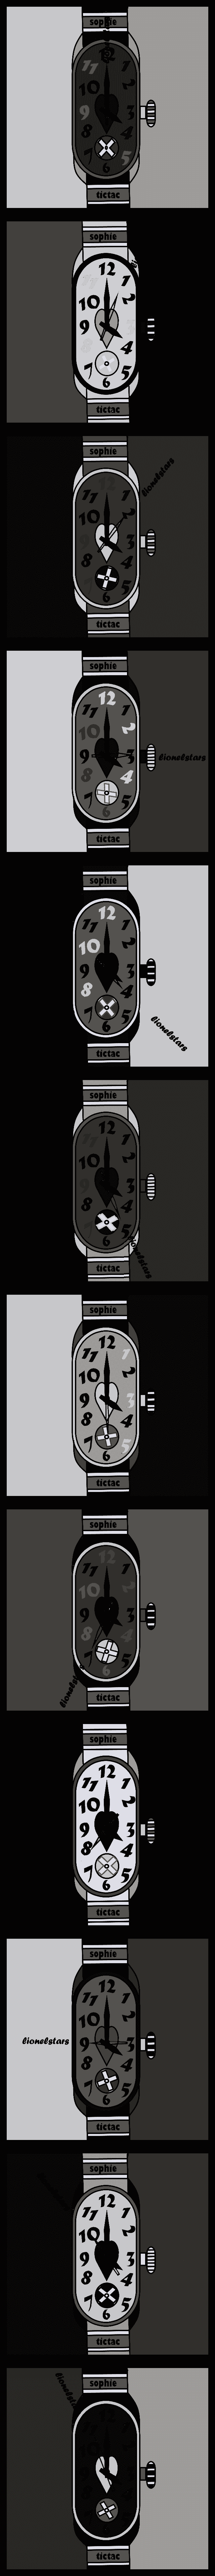 la montre sophie#3